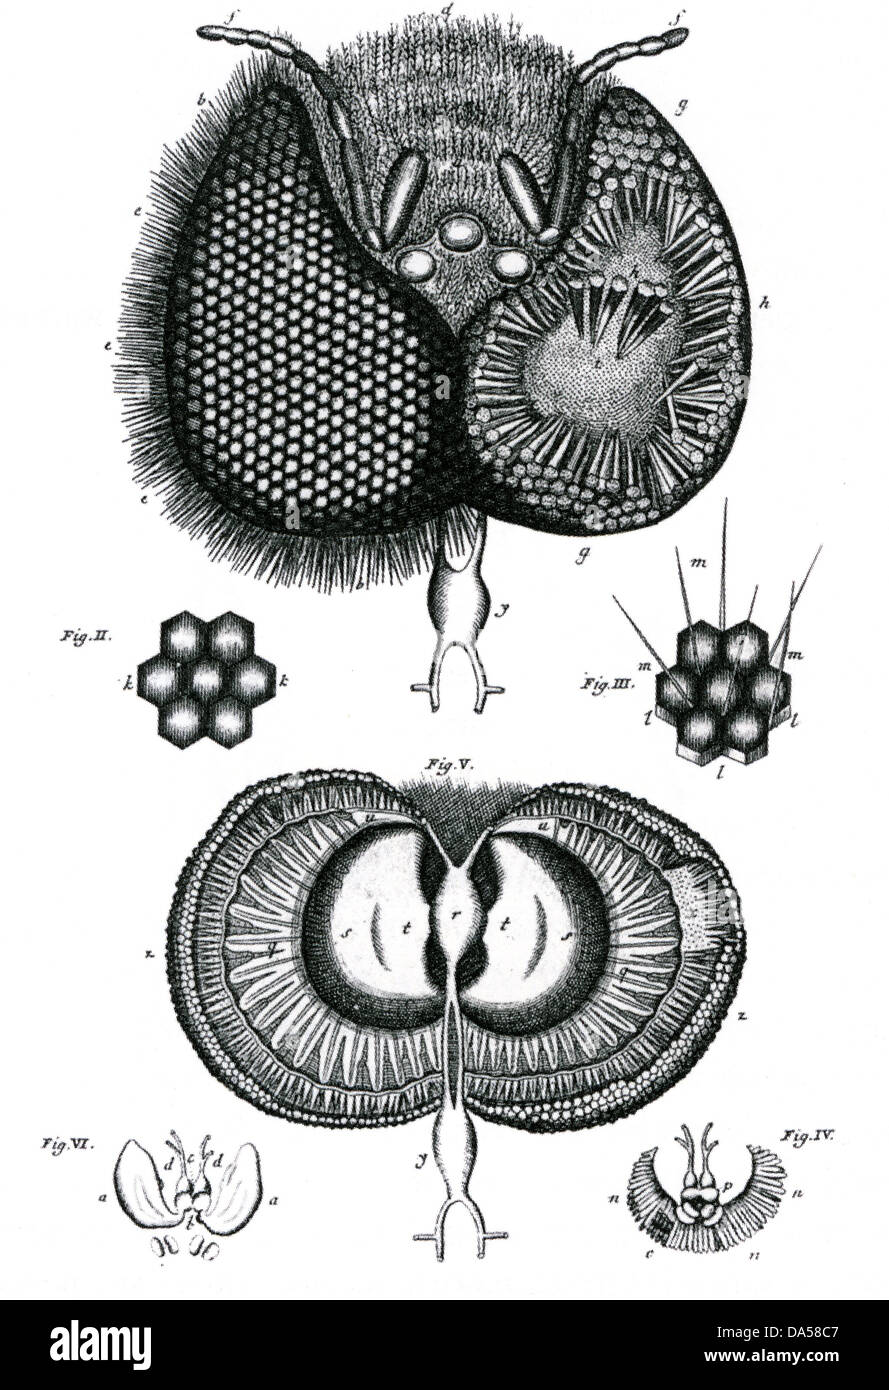 JAN SWAMMERDAM (1637-1680) biologiste néerlandais. L'œil composé de l'abeille de son Biblia Naturae Banque D'Images